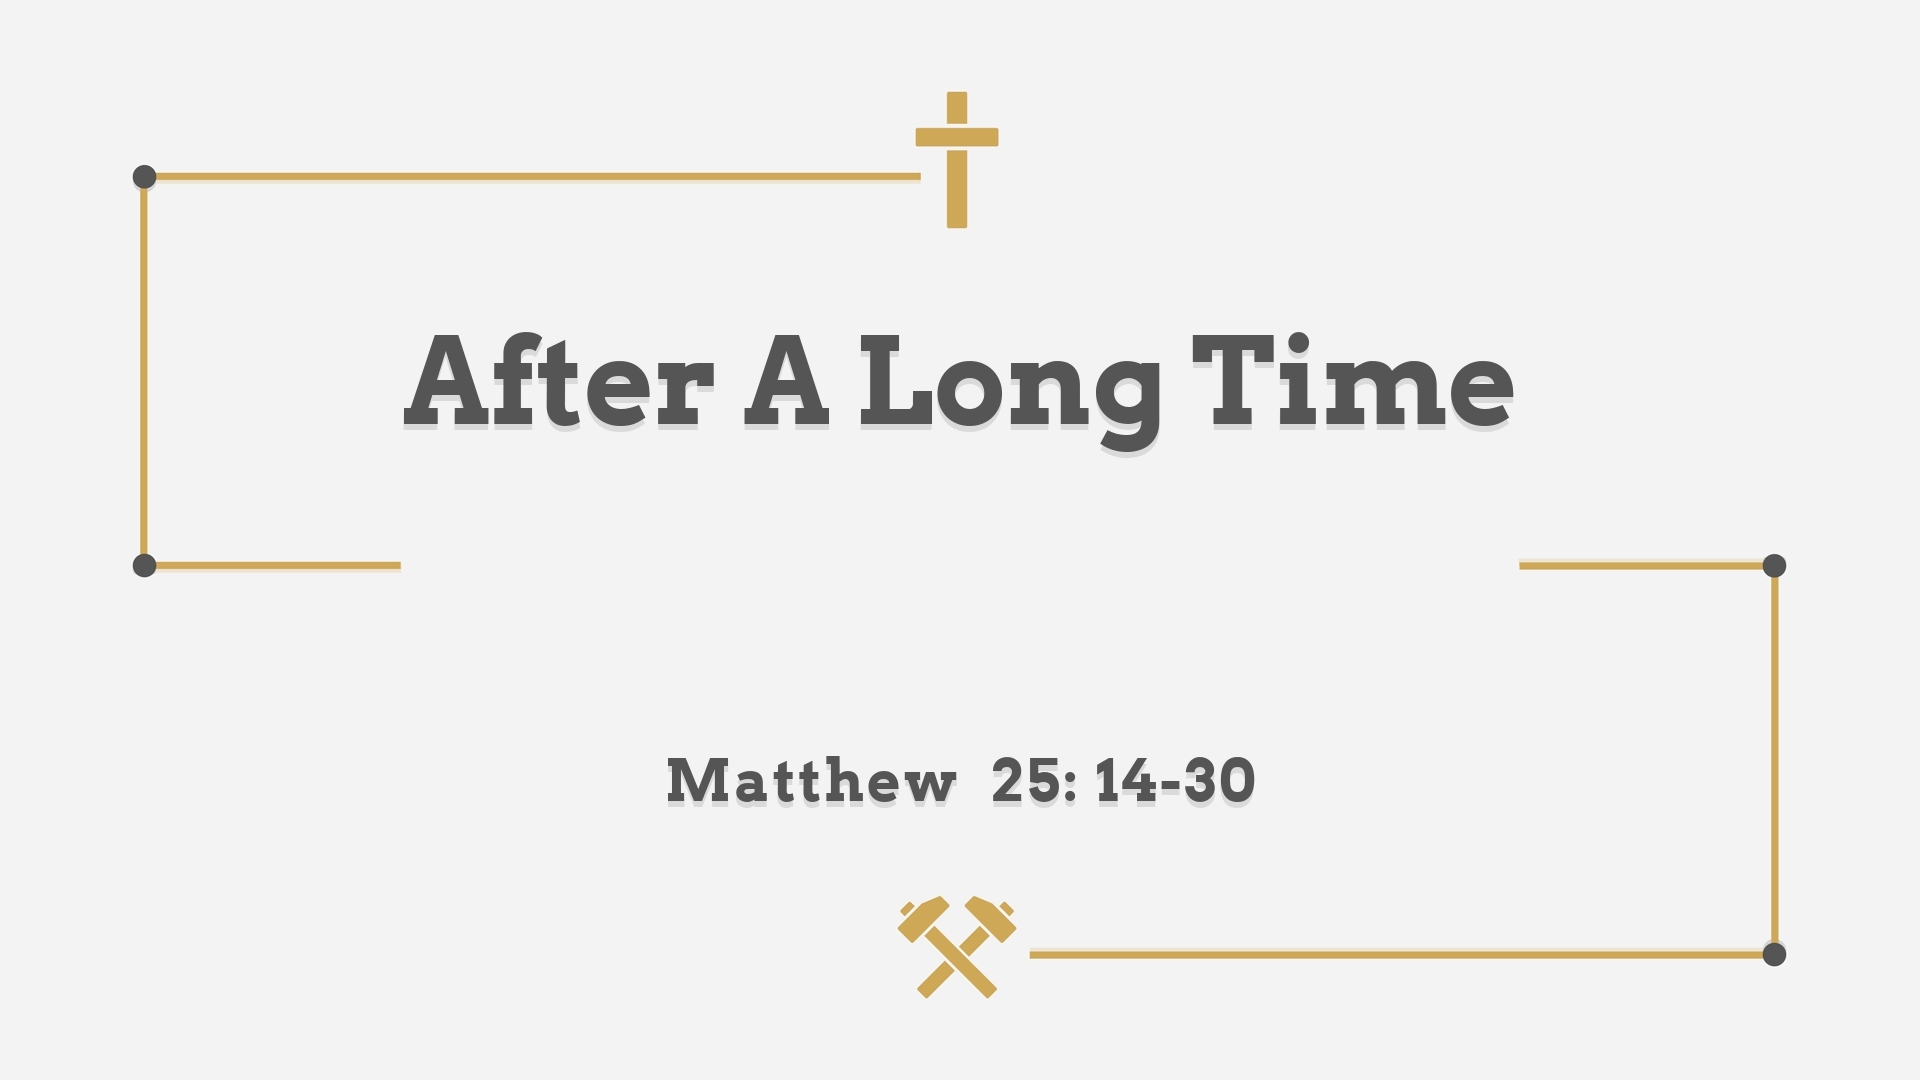 Oct 30, 2022 - After A Long Time (Video) - Matthew 25: 14-30